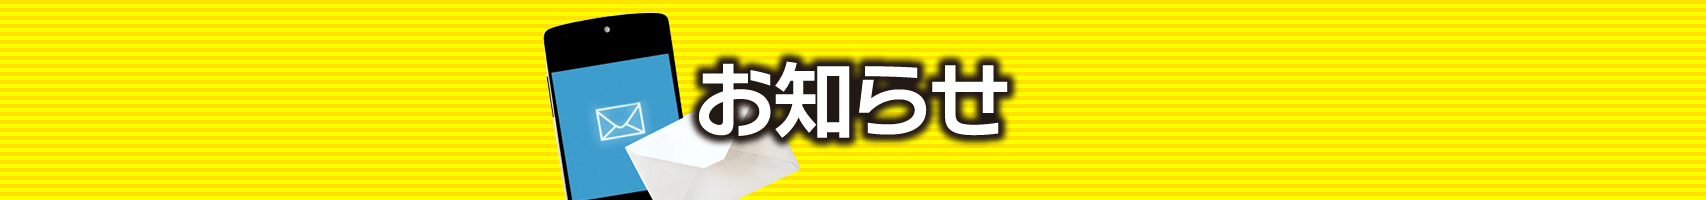 亀谷競馬サロン 本日21時時点の更新コンテンツ/7月10日(土)